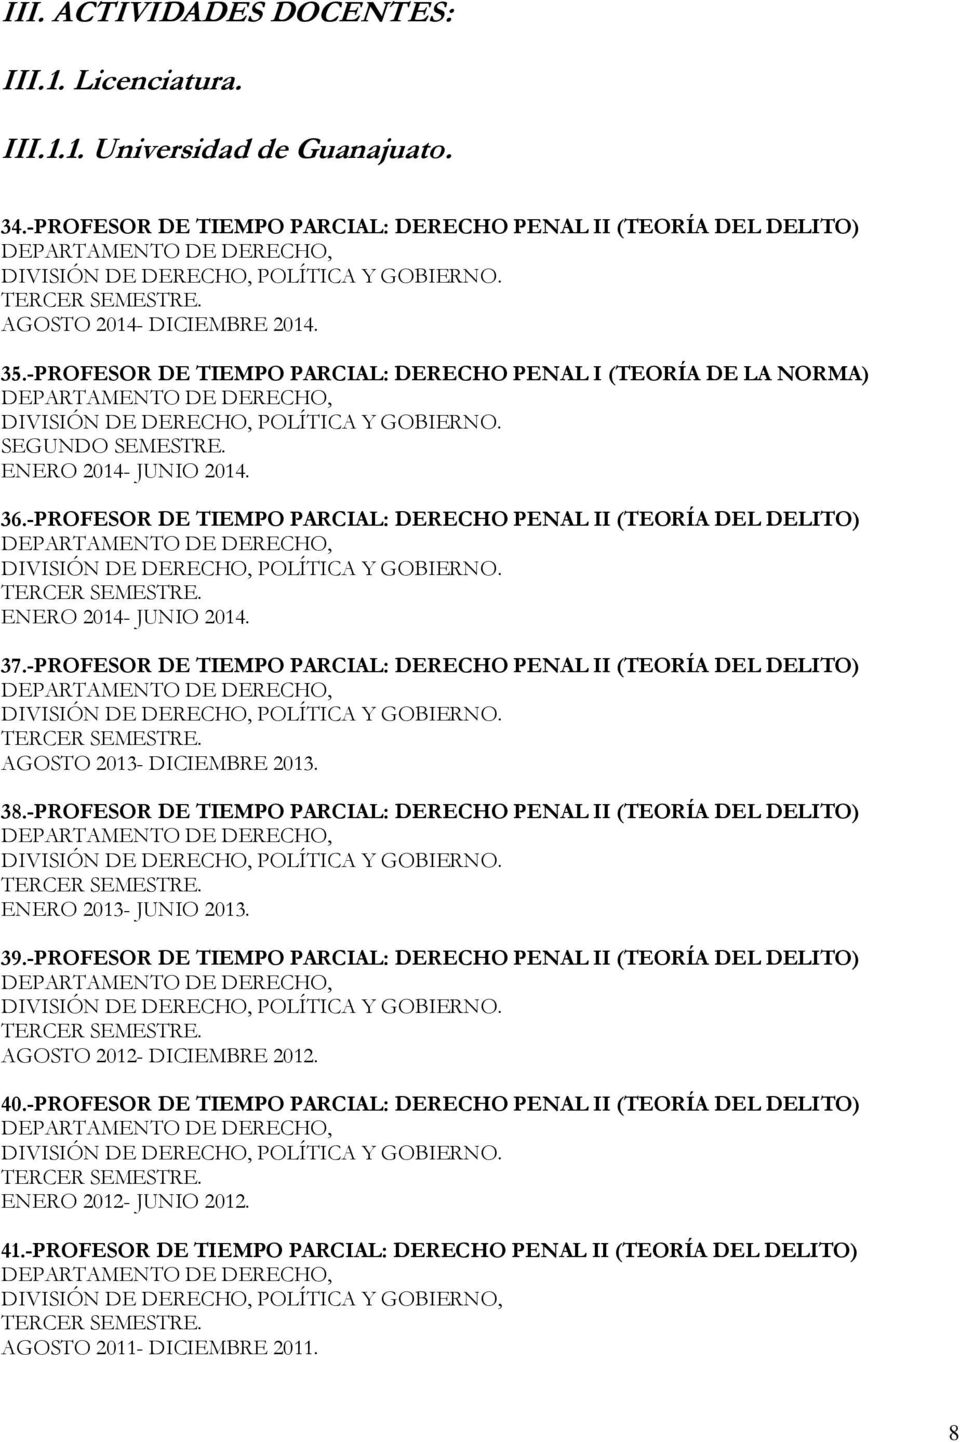 37.-PROFESOR DE TIEMPO PARCIAL: DERECHO PENAL II (TEORÍA DEL DELITO) AGOSTO 2013- DICIEMBRE 2013. 38.-PROFESOR DE TIEMPO PARCIAL: DERECHO PENAL II (TEORÍA DEL DELITO) ENERO 2013- JUNIO 2013. 39.